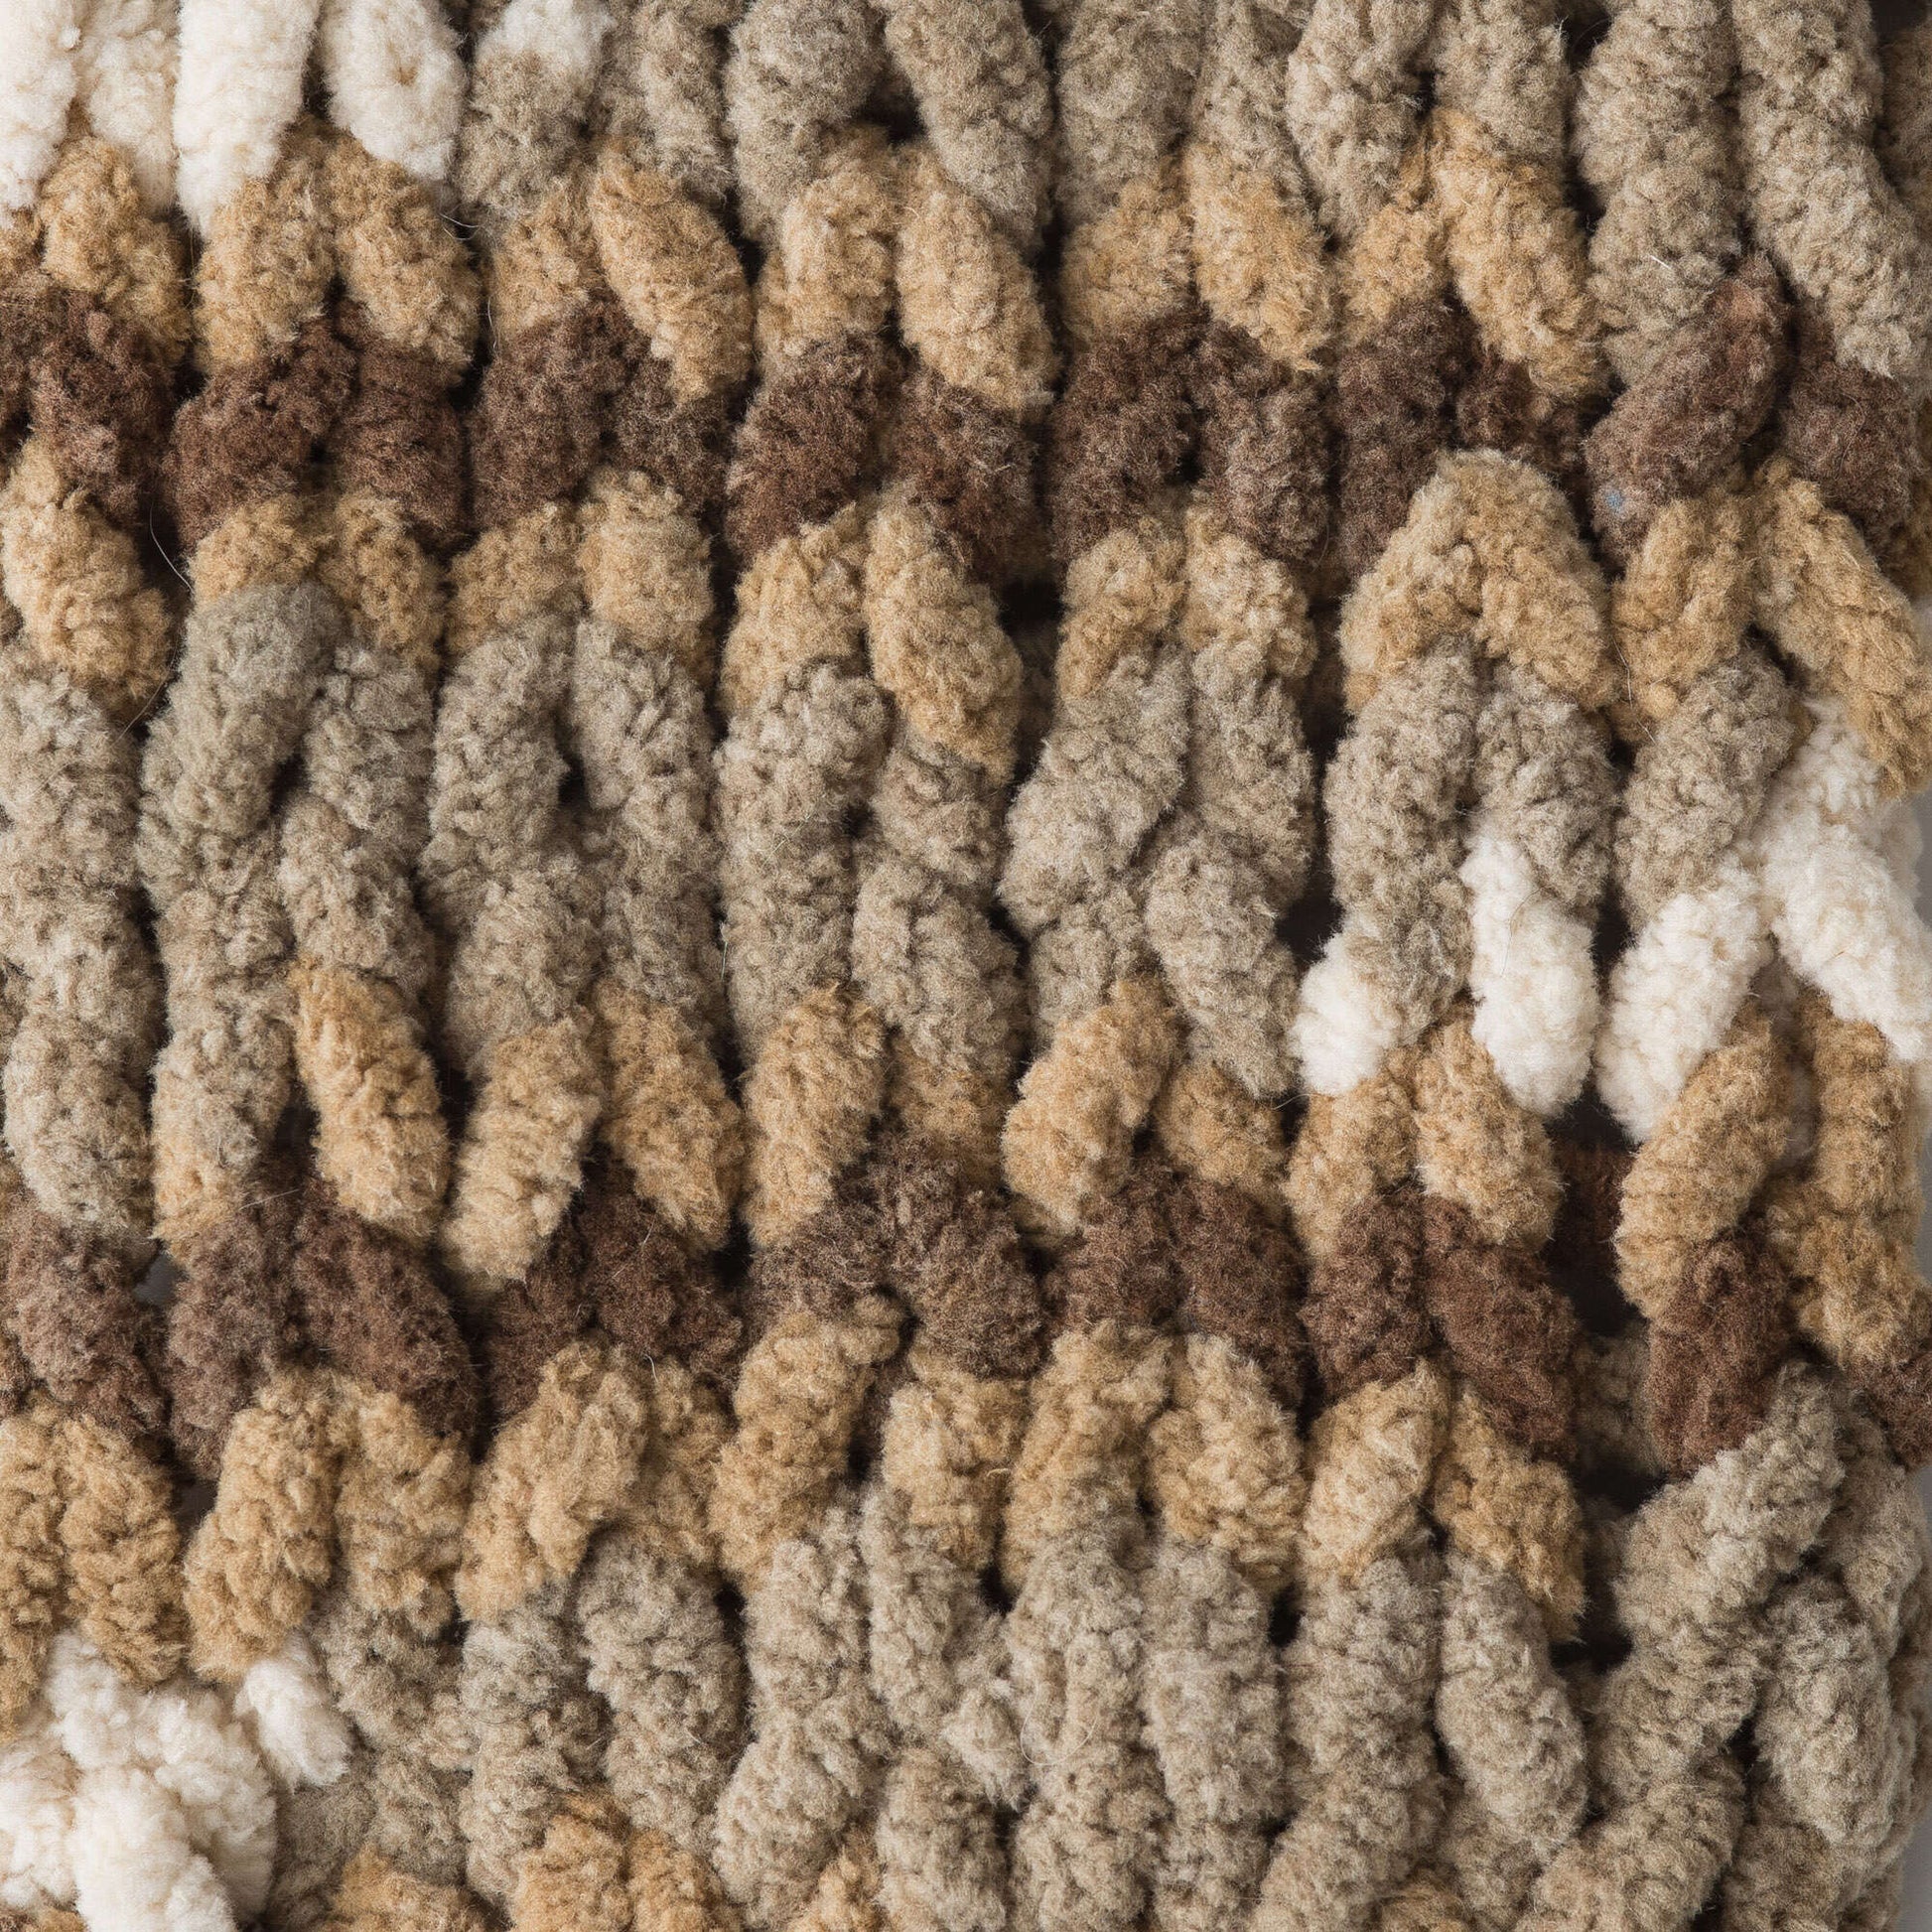 Bernat Blanket Yarn (150 g/5.3 oz) Sonoma